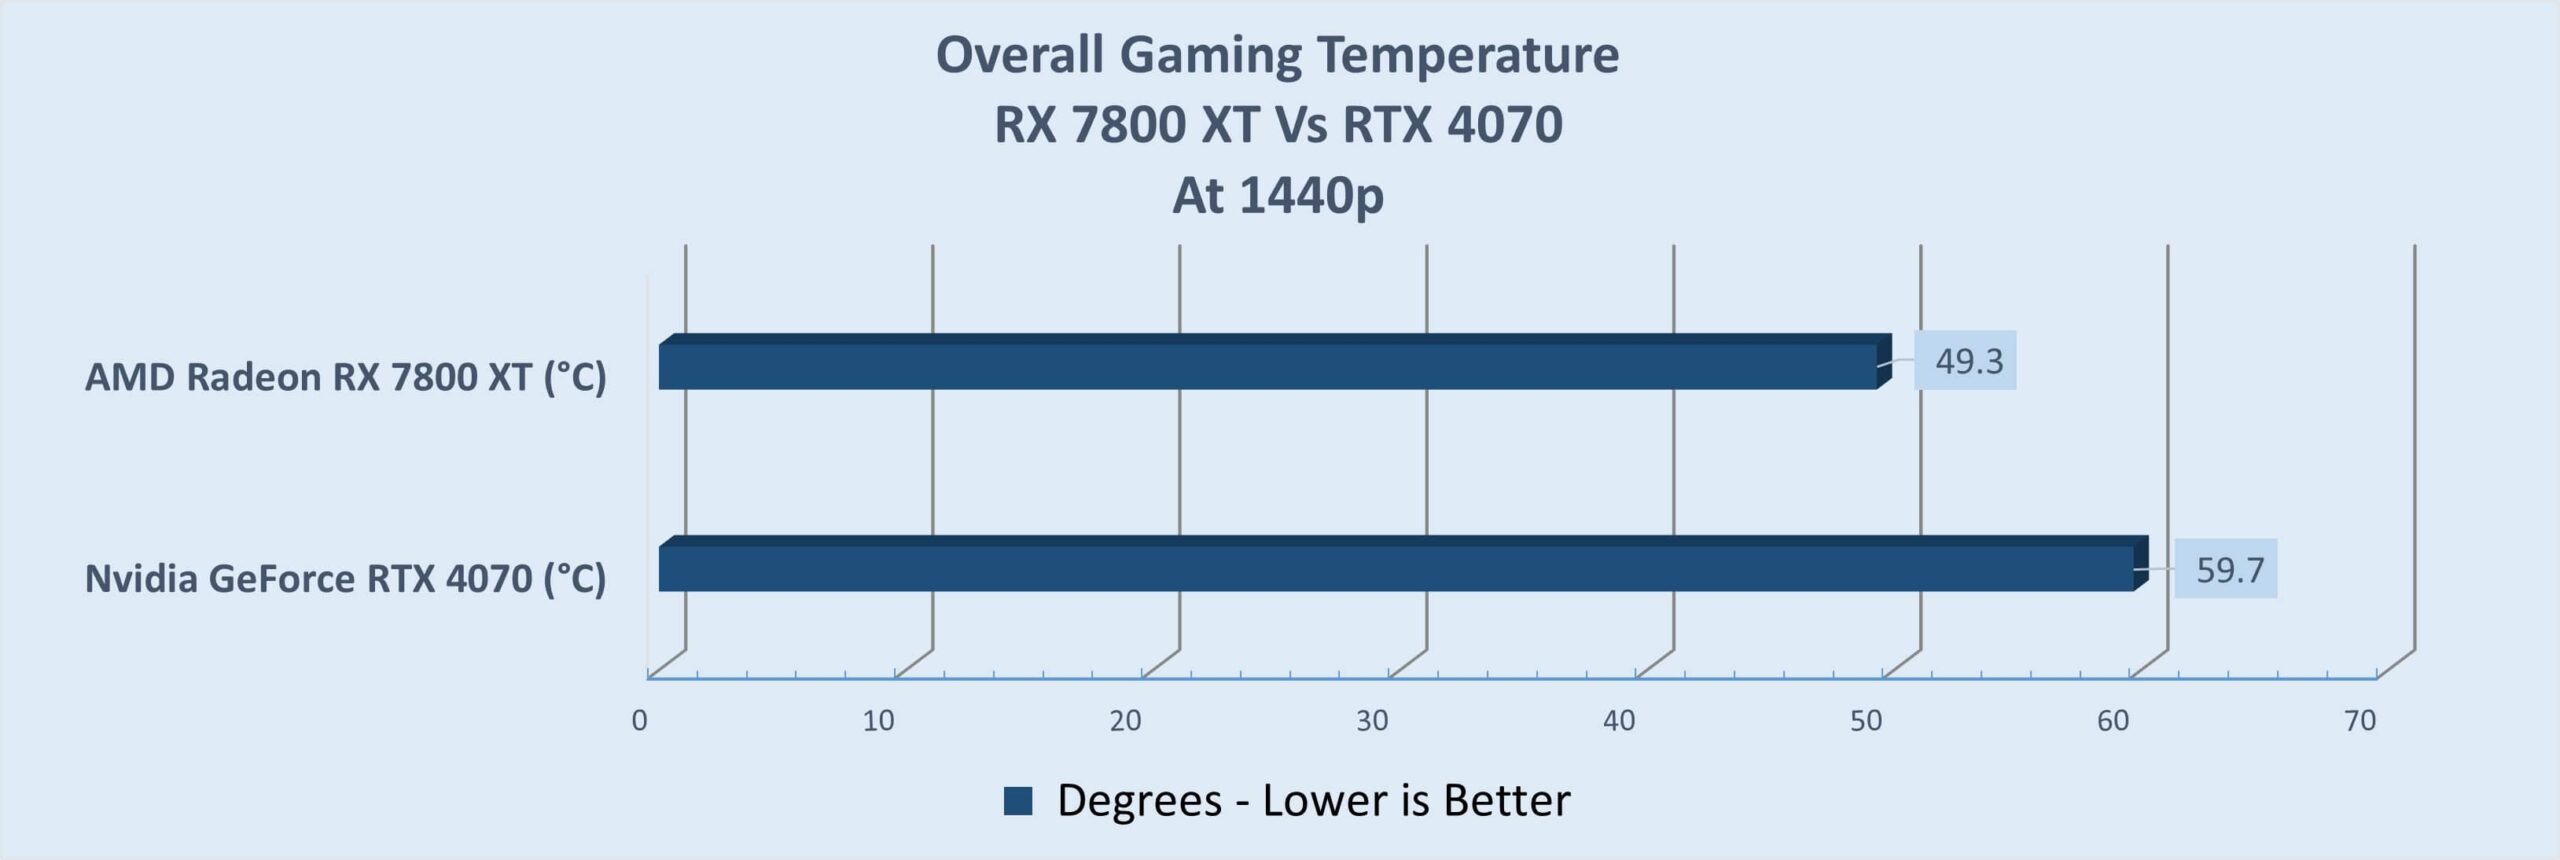 Average Gaming Temperature